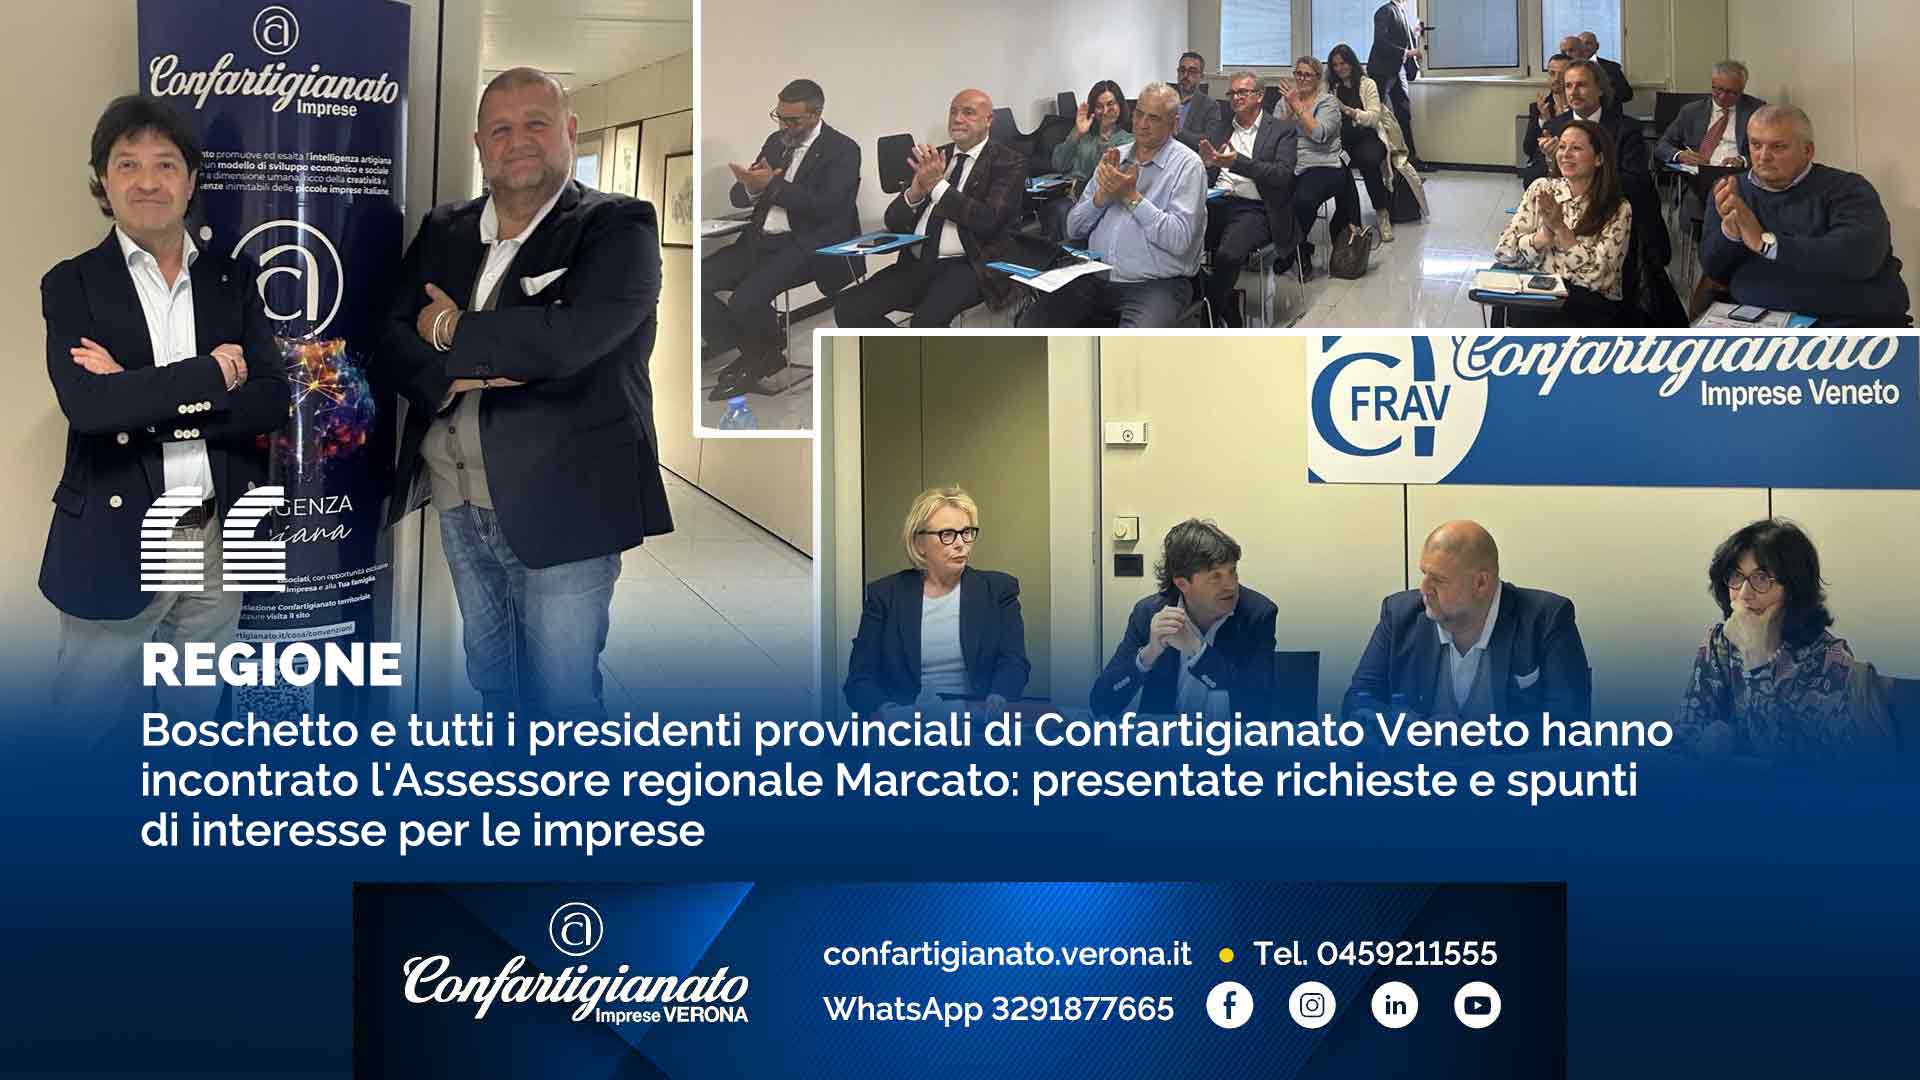 REGIONE – Boschetto e tutti i presidenti provinciali di Confartigianato Veneto hanno incontrato l'Assessore regionale Marcato: presentate richieste e spunti di interesse per le imprese